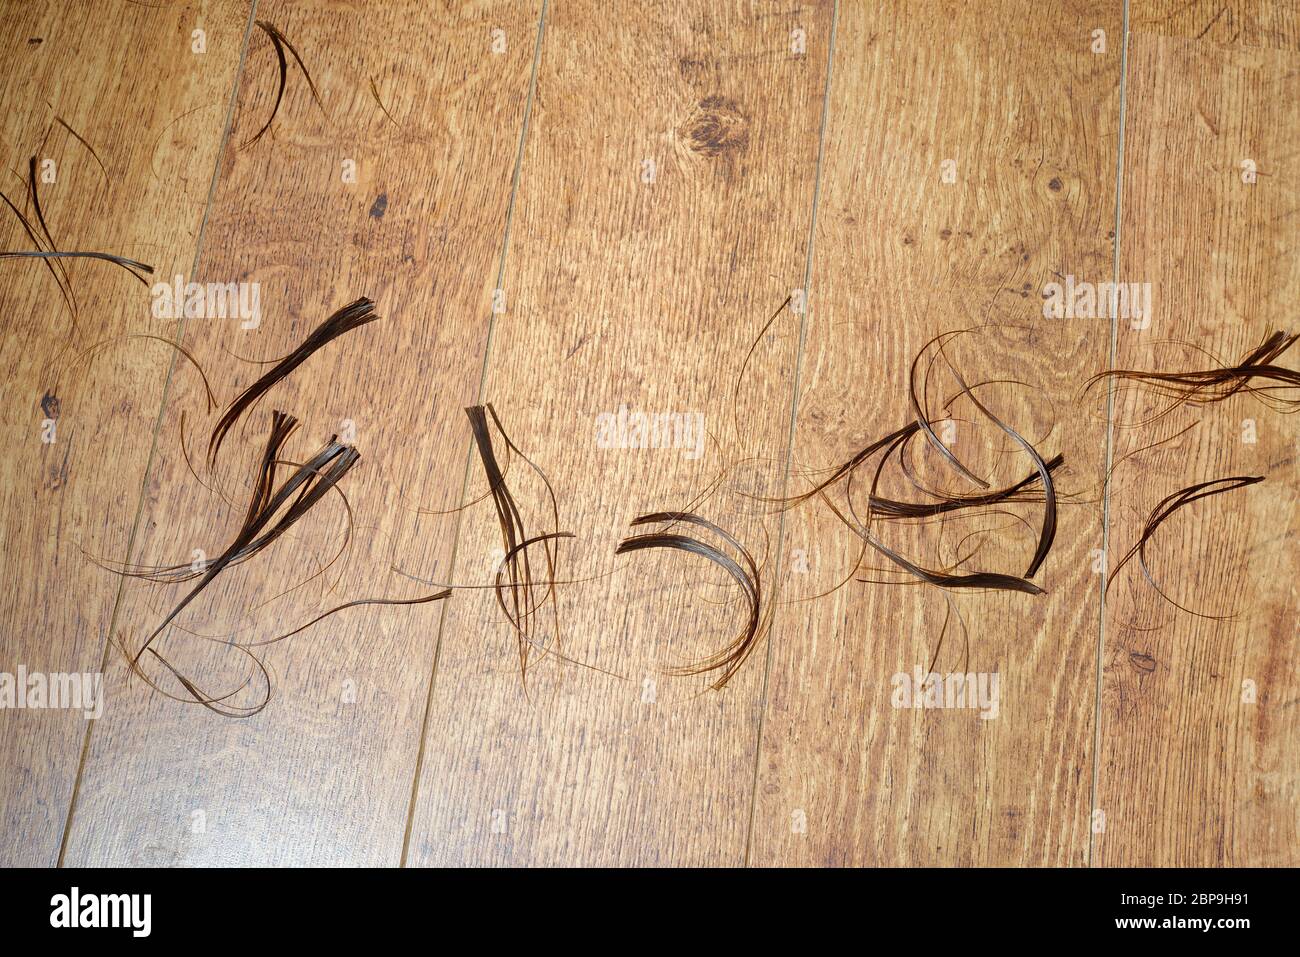 Ricci di capelli tagliati sul pavimento. Foto Stock